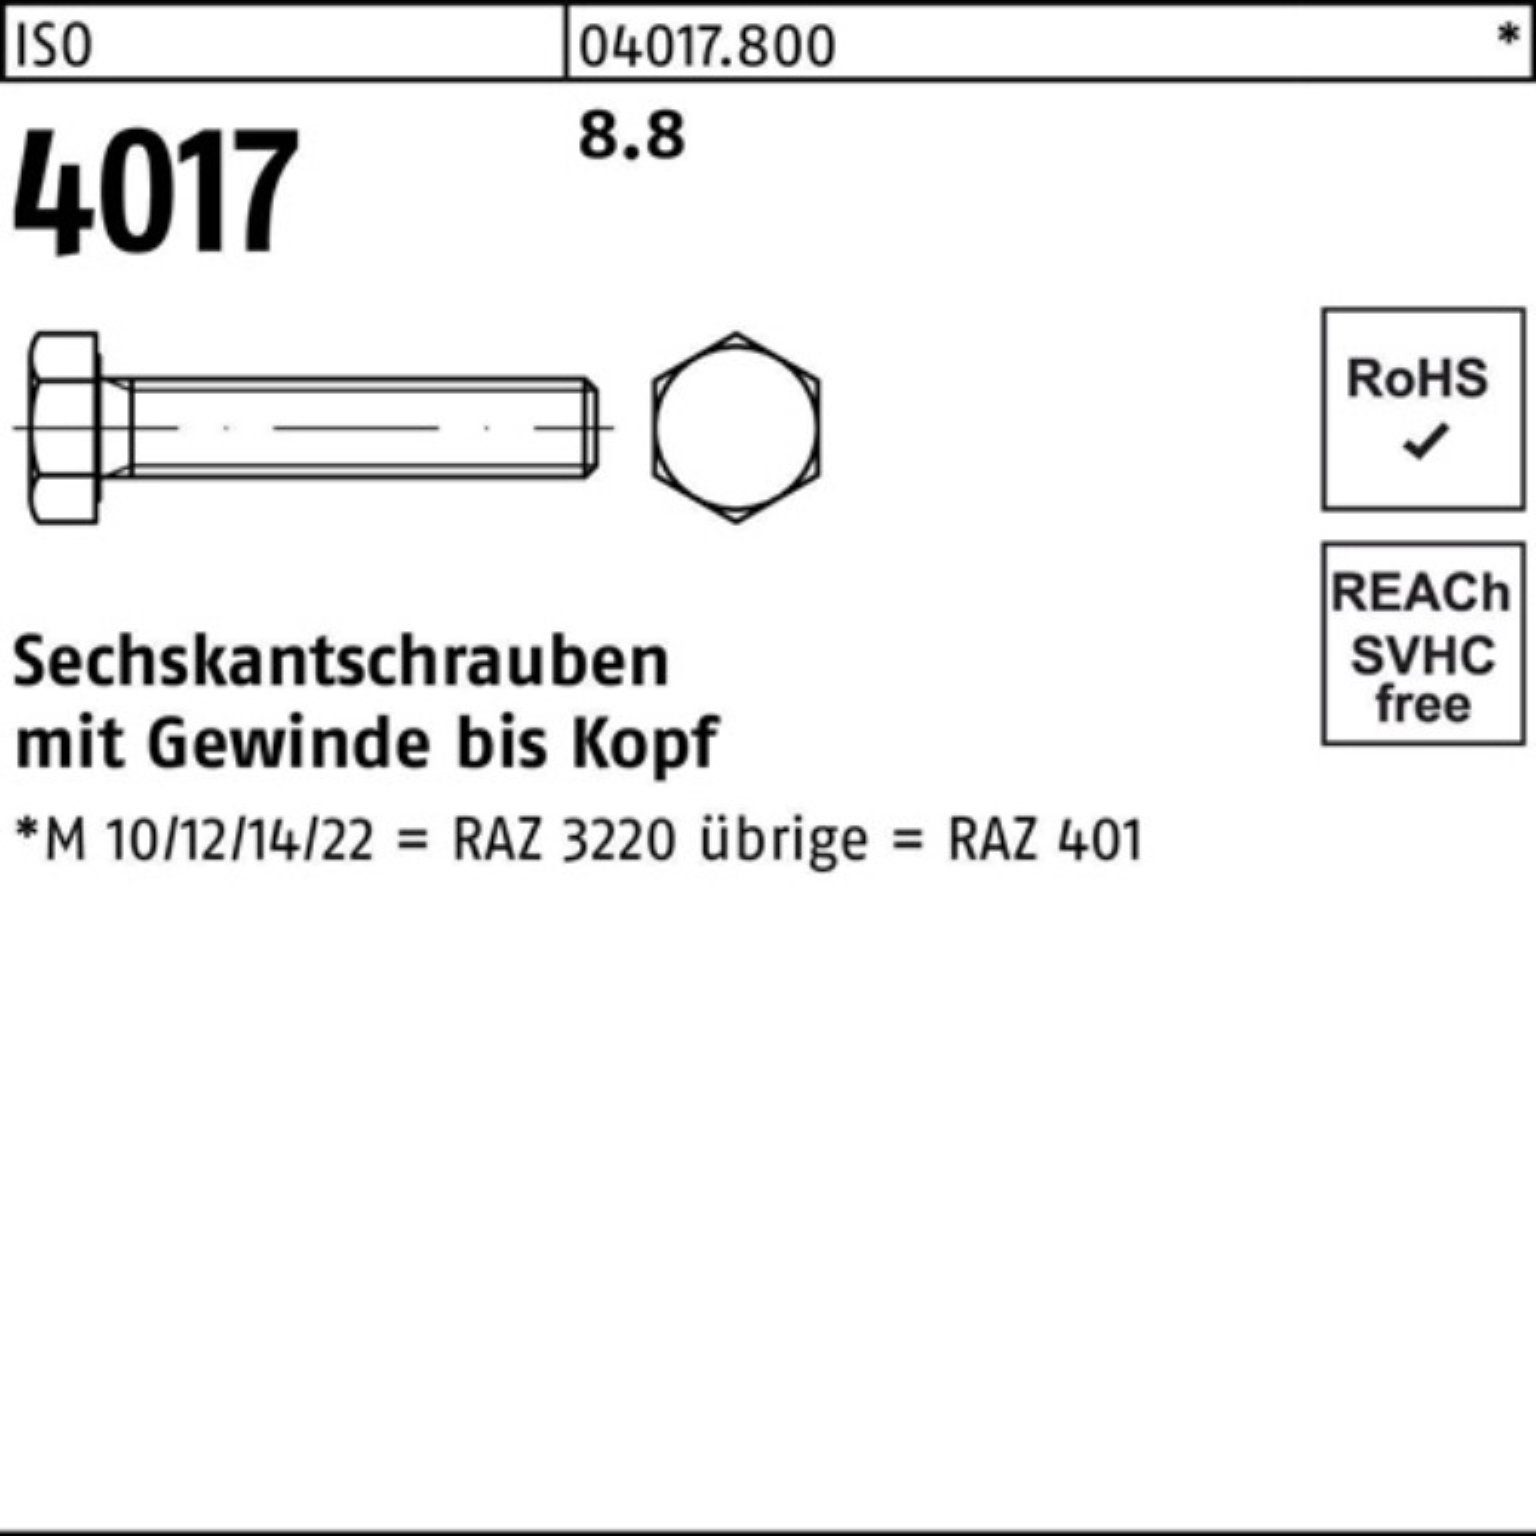 Pack 8.8 40 ISO 10 Sechskantschraube ISO M27x 4017 Bufab Stück VG Sechskantschraube 100er 401